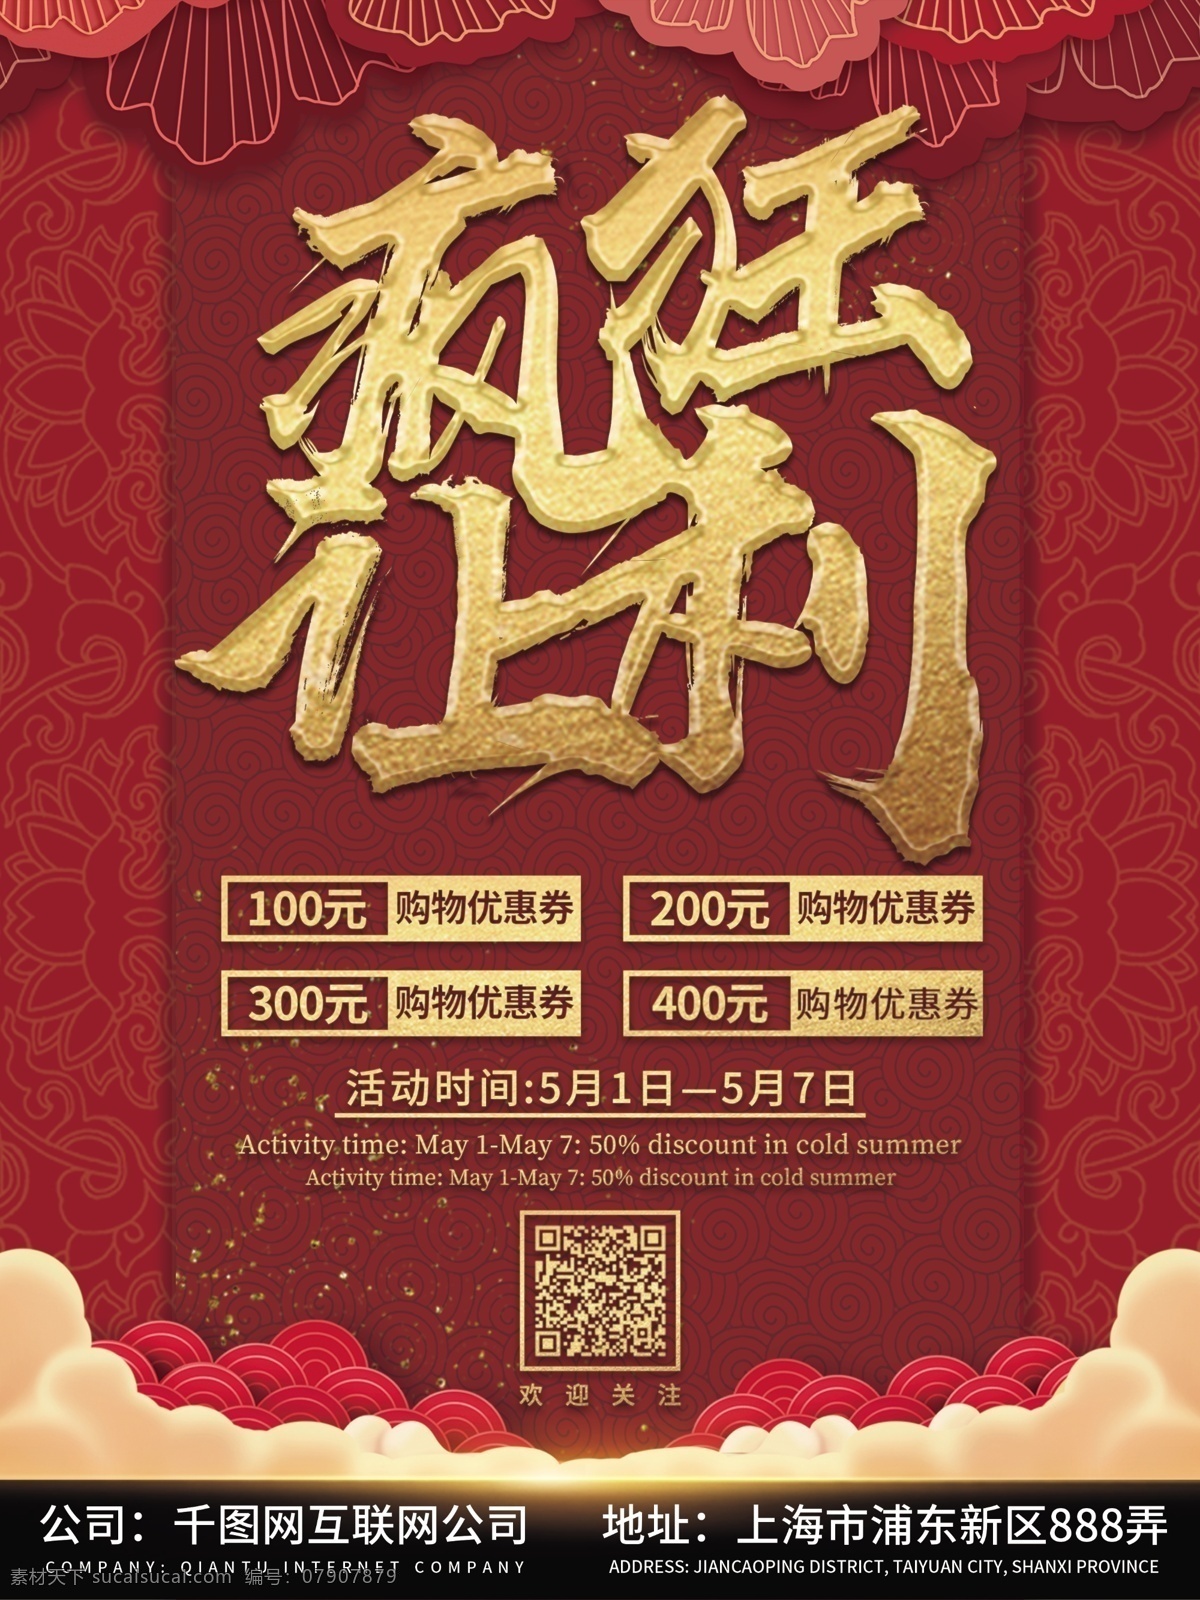 原创 简约 创意 红色 金色 疯狂 让利 商业 宣传海报 中国风 疯狂让利 优惠 促销 宣传 海报 源文件